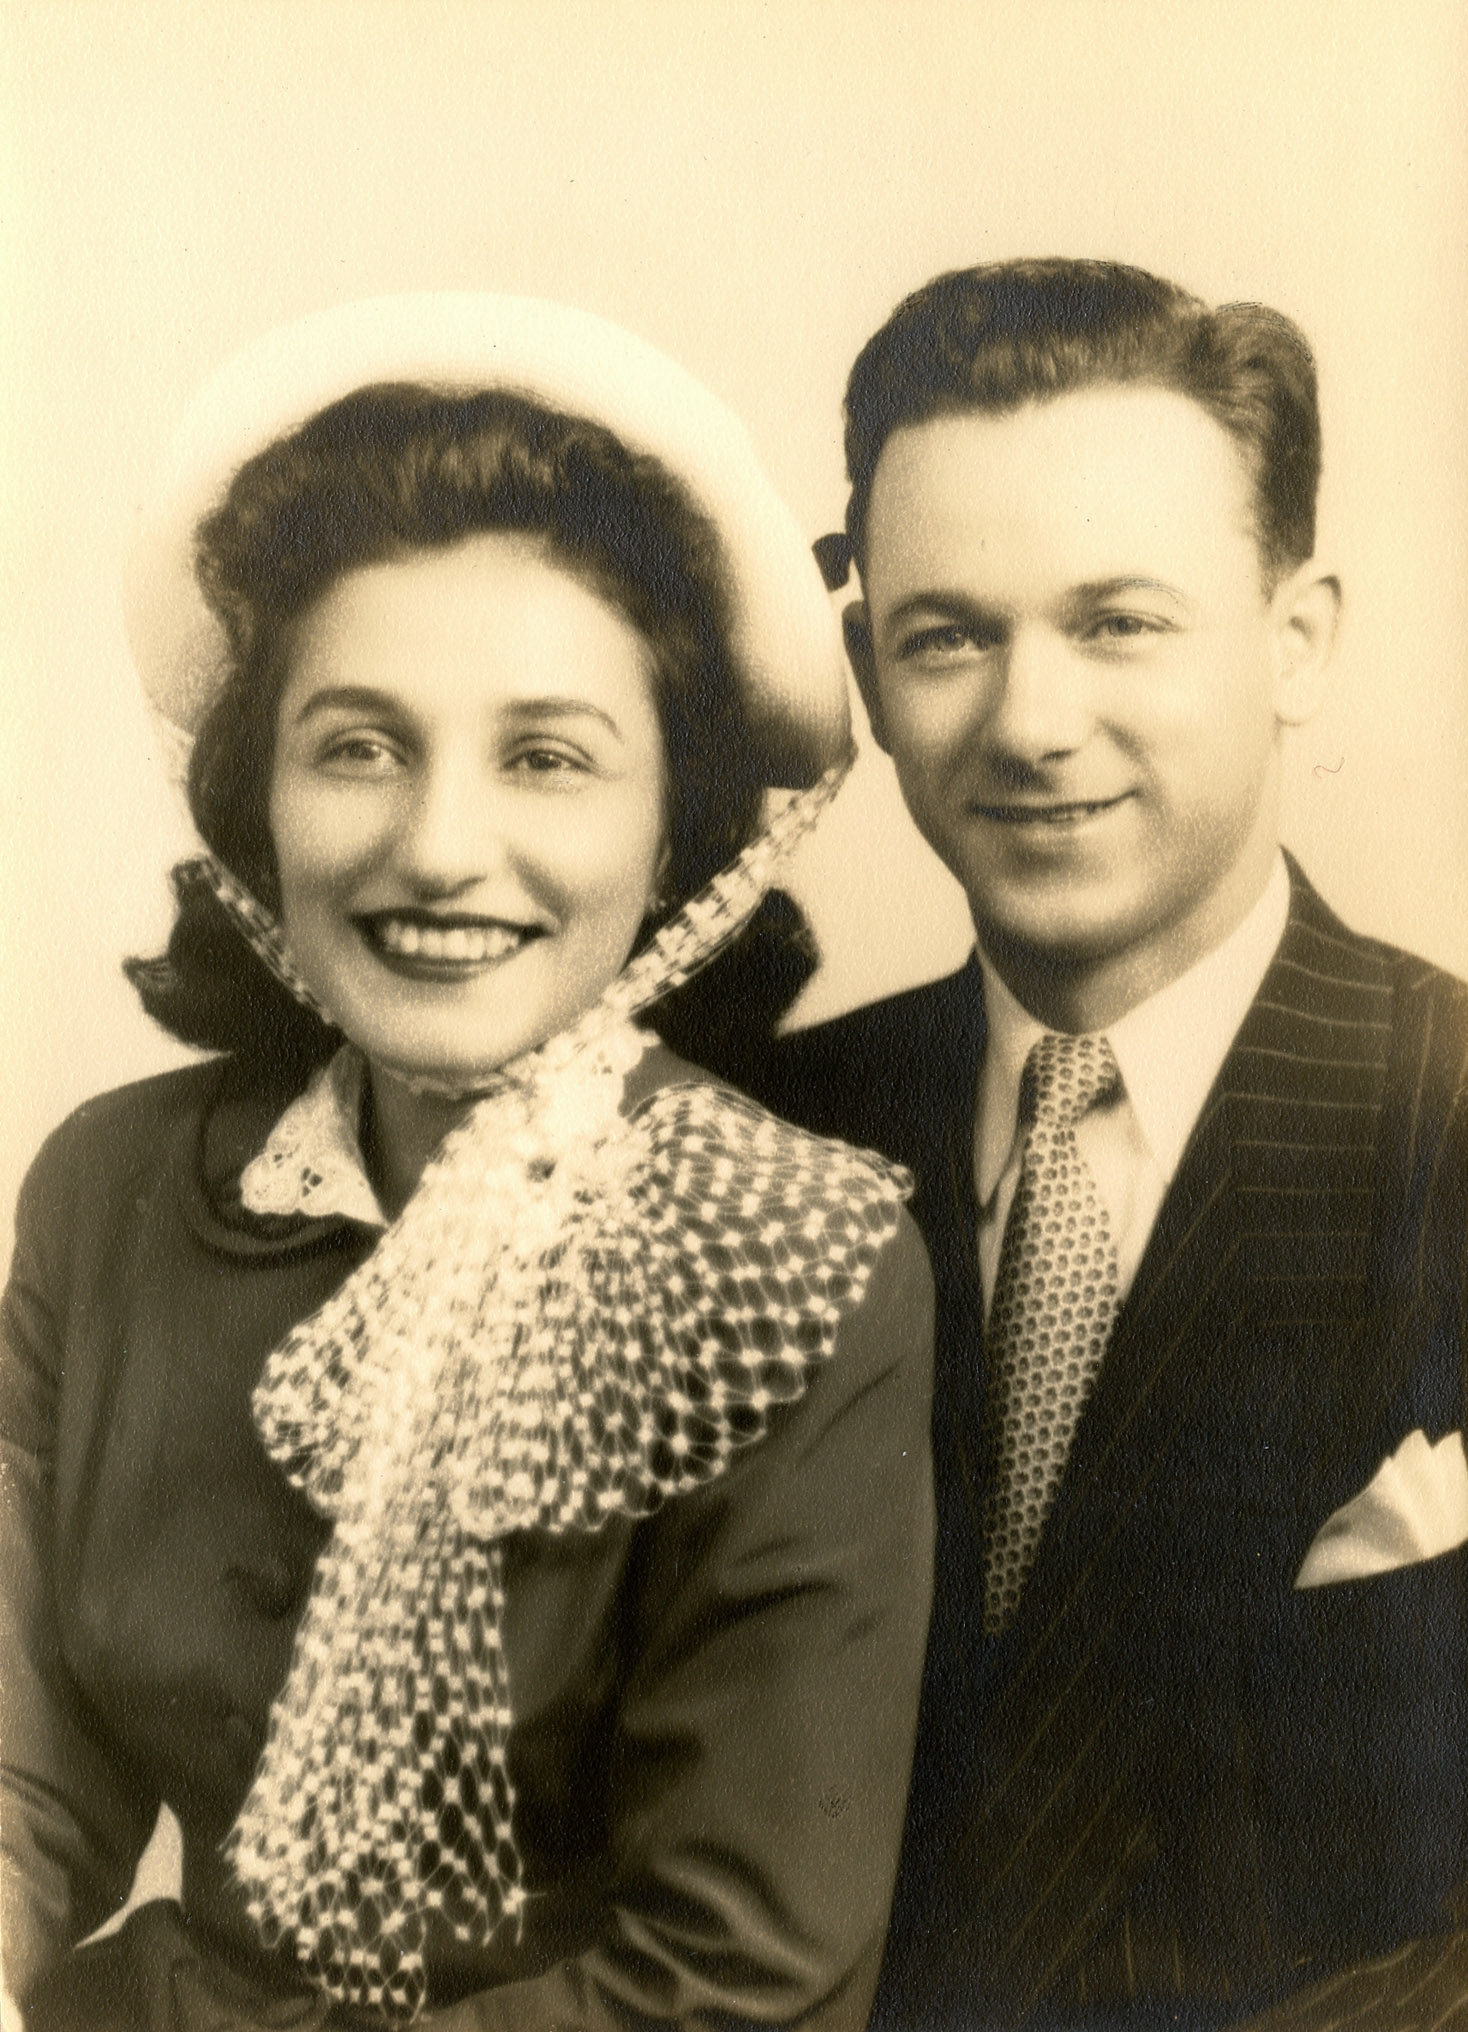 Aunt Despina & Joseph Lubrano